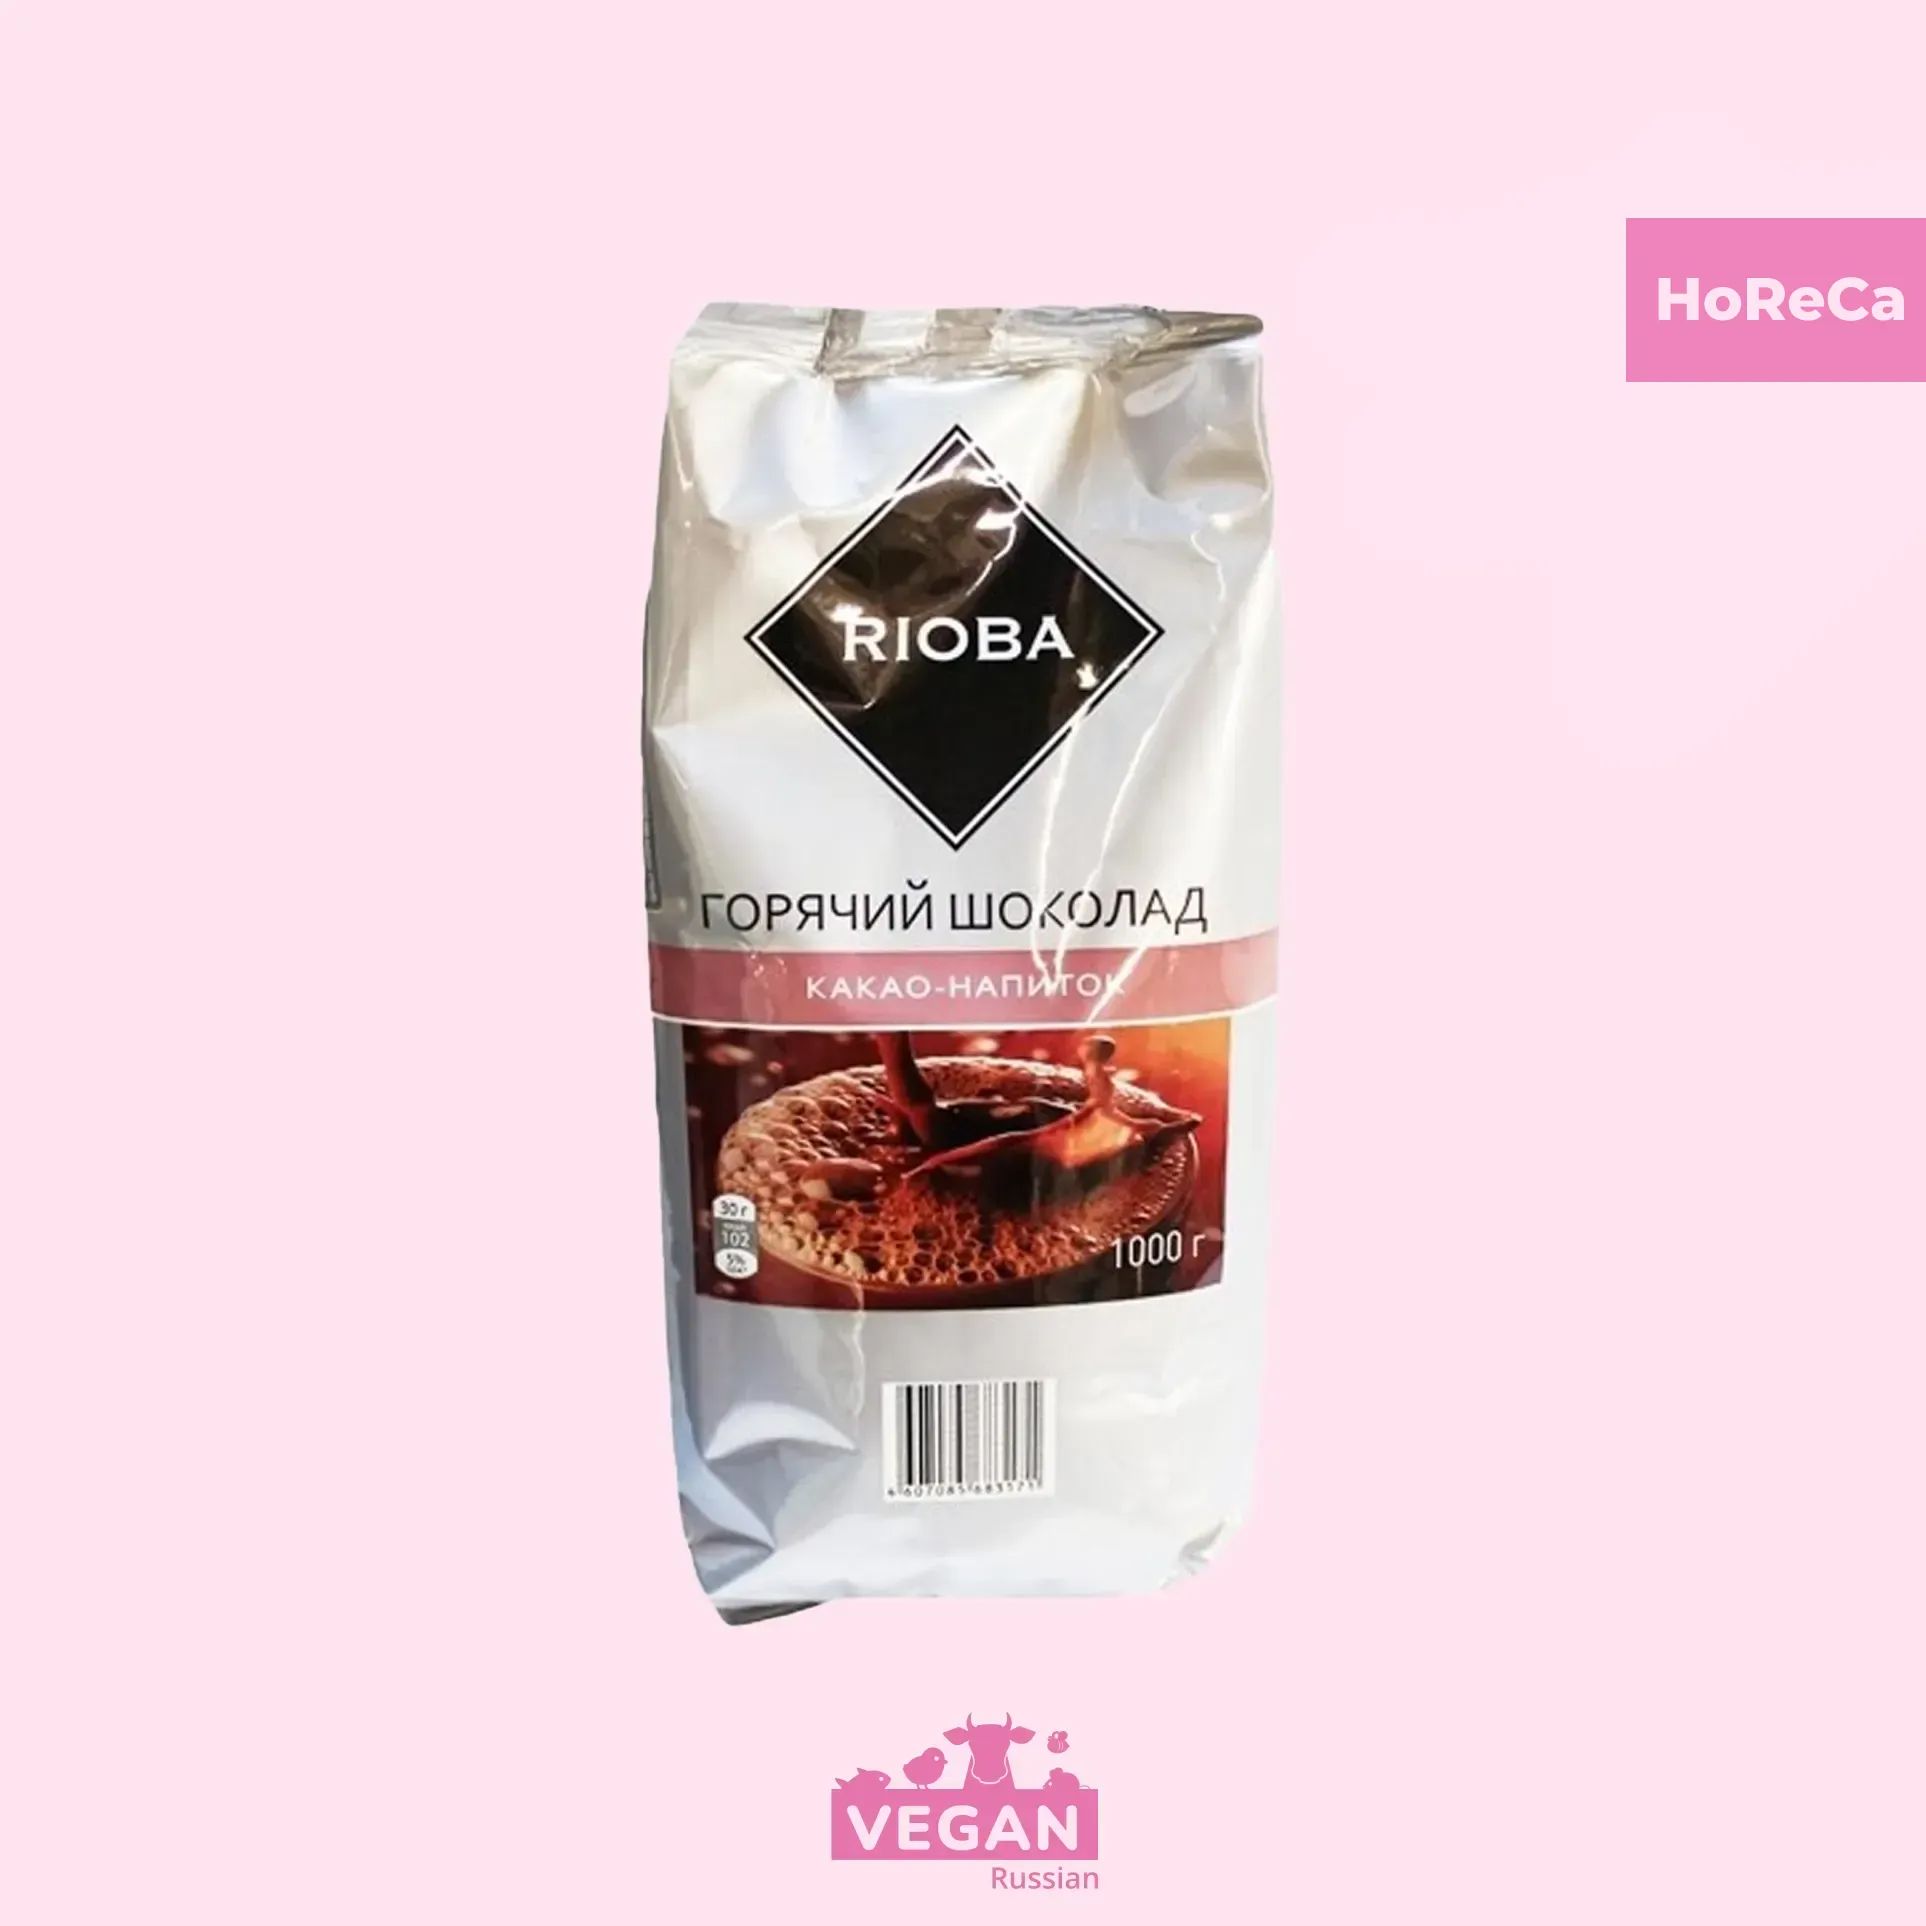 Какао-напиток растворимый Горячий шоколад Rioba 1 кг